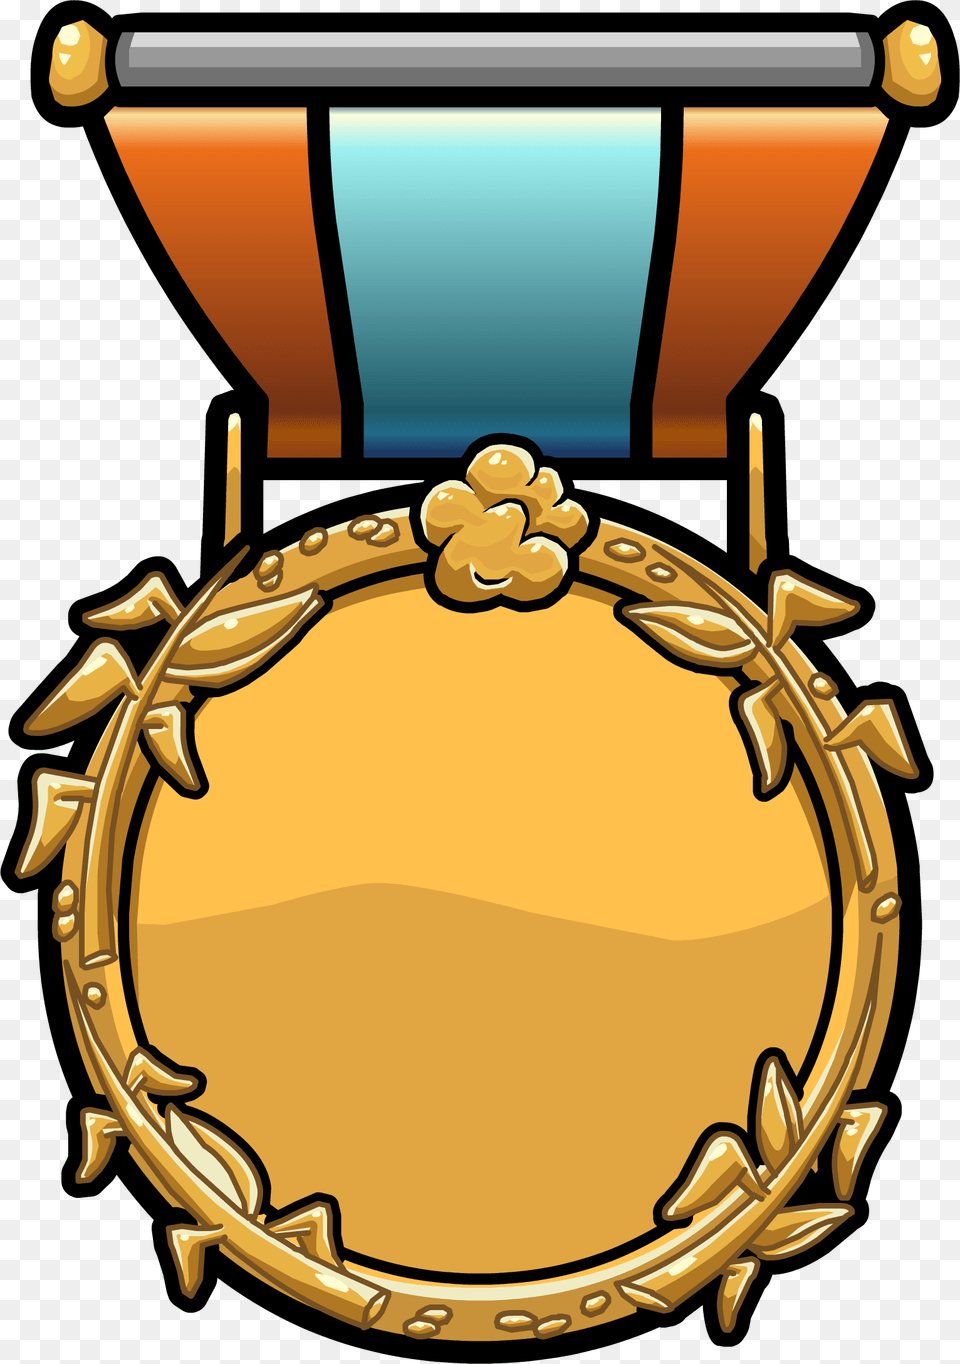 Medal Artwork Steamboat Fleur De Lis Coat Of Arms Medal Retro, Gold, Gold Medal, Trophy Free Png